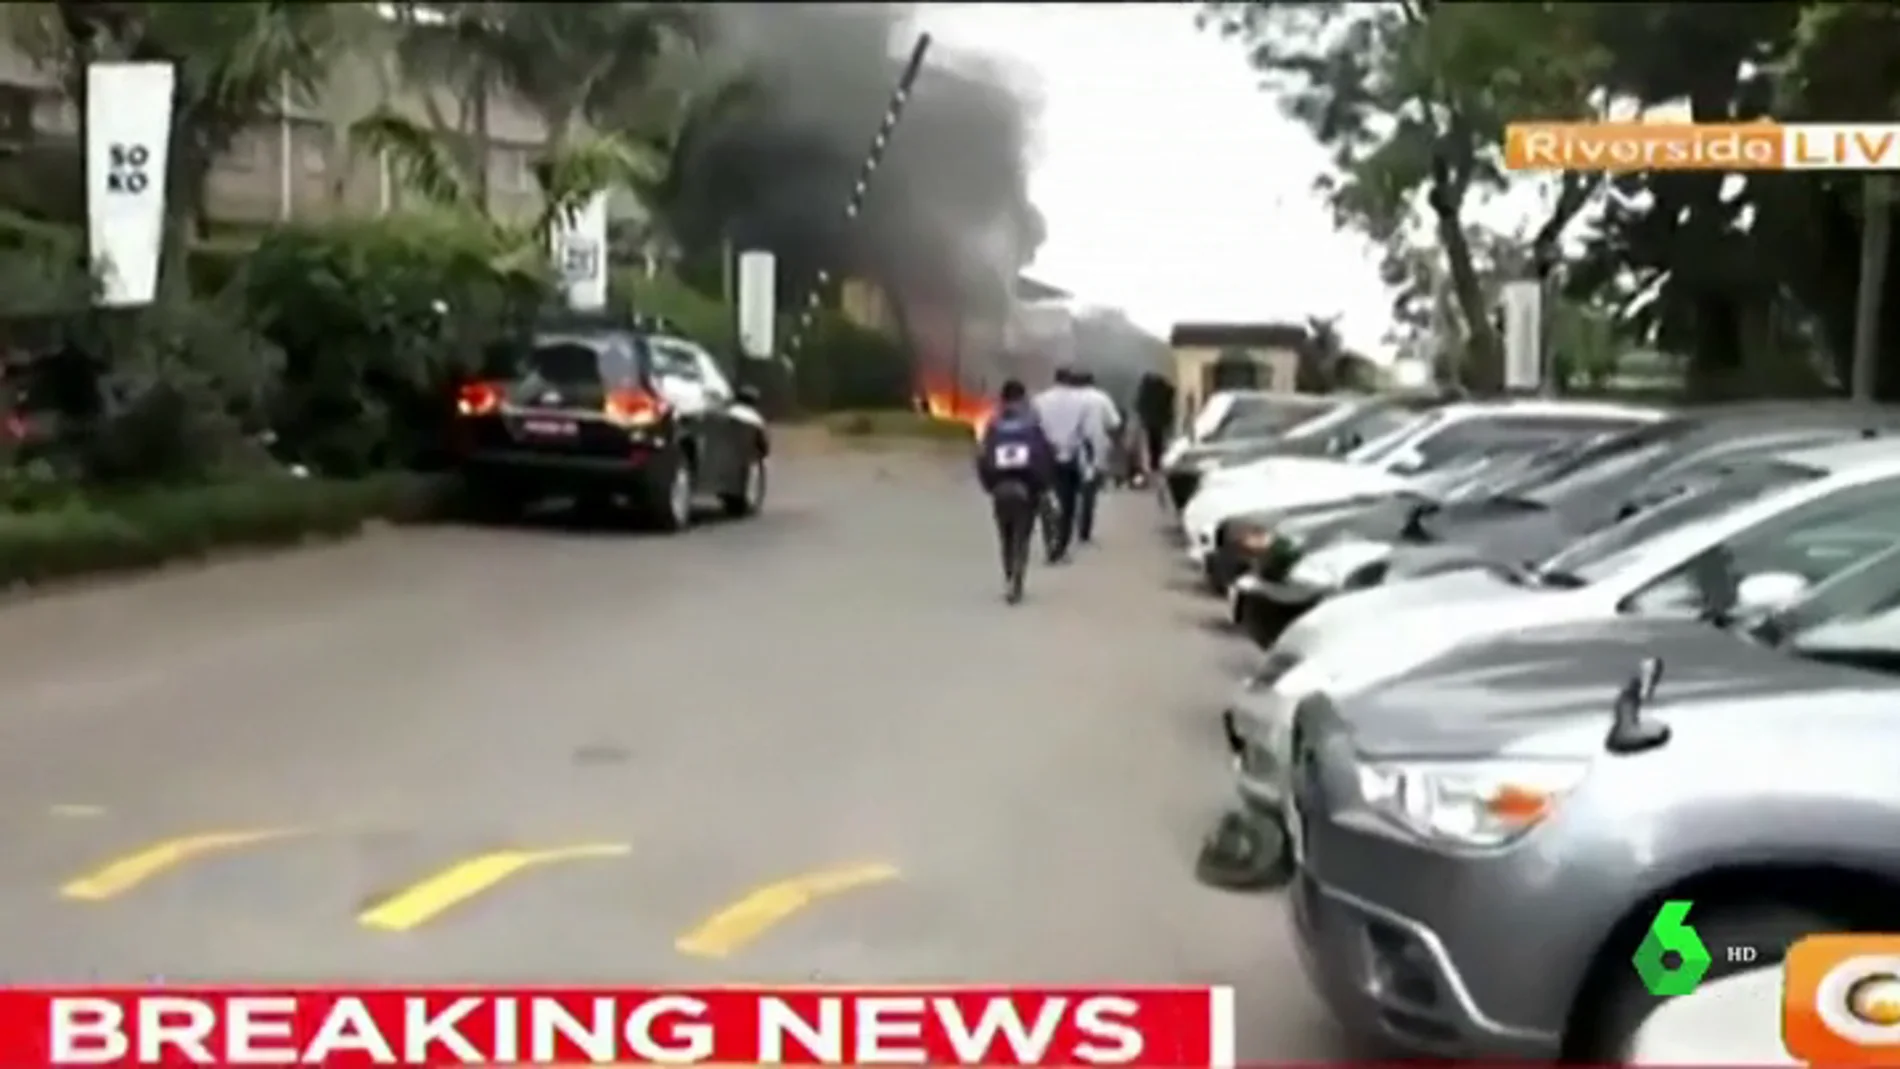 Al menos un muerto y cuatro heridos en el ataque terrorista a un complejo turístico de Nairobi